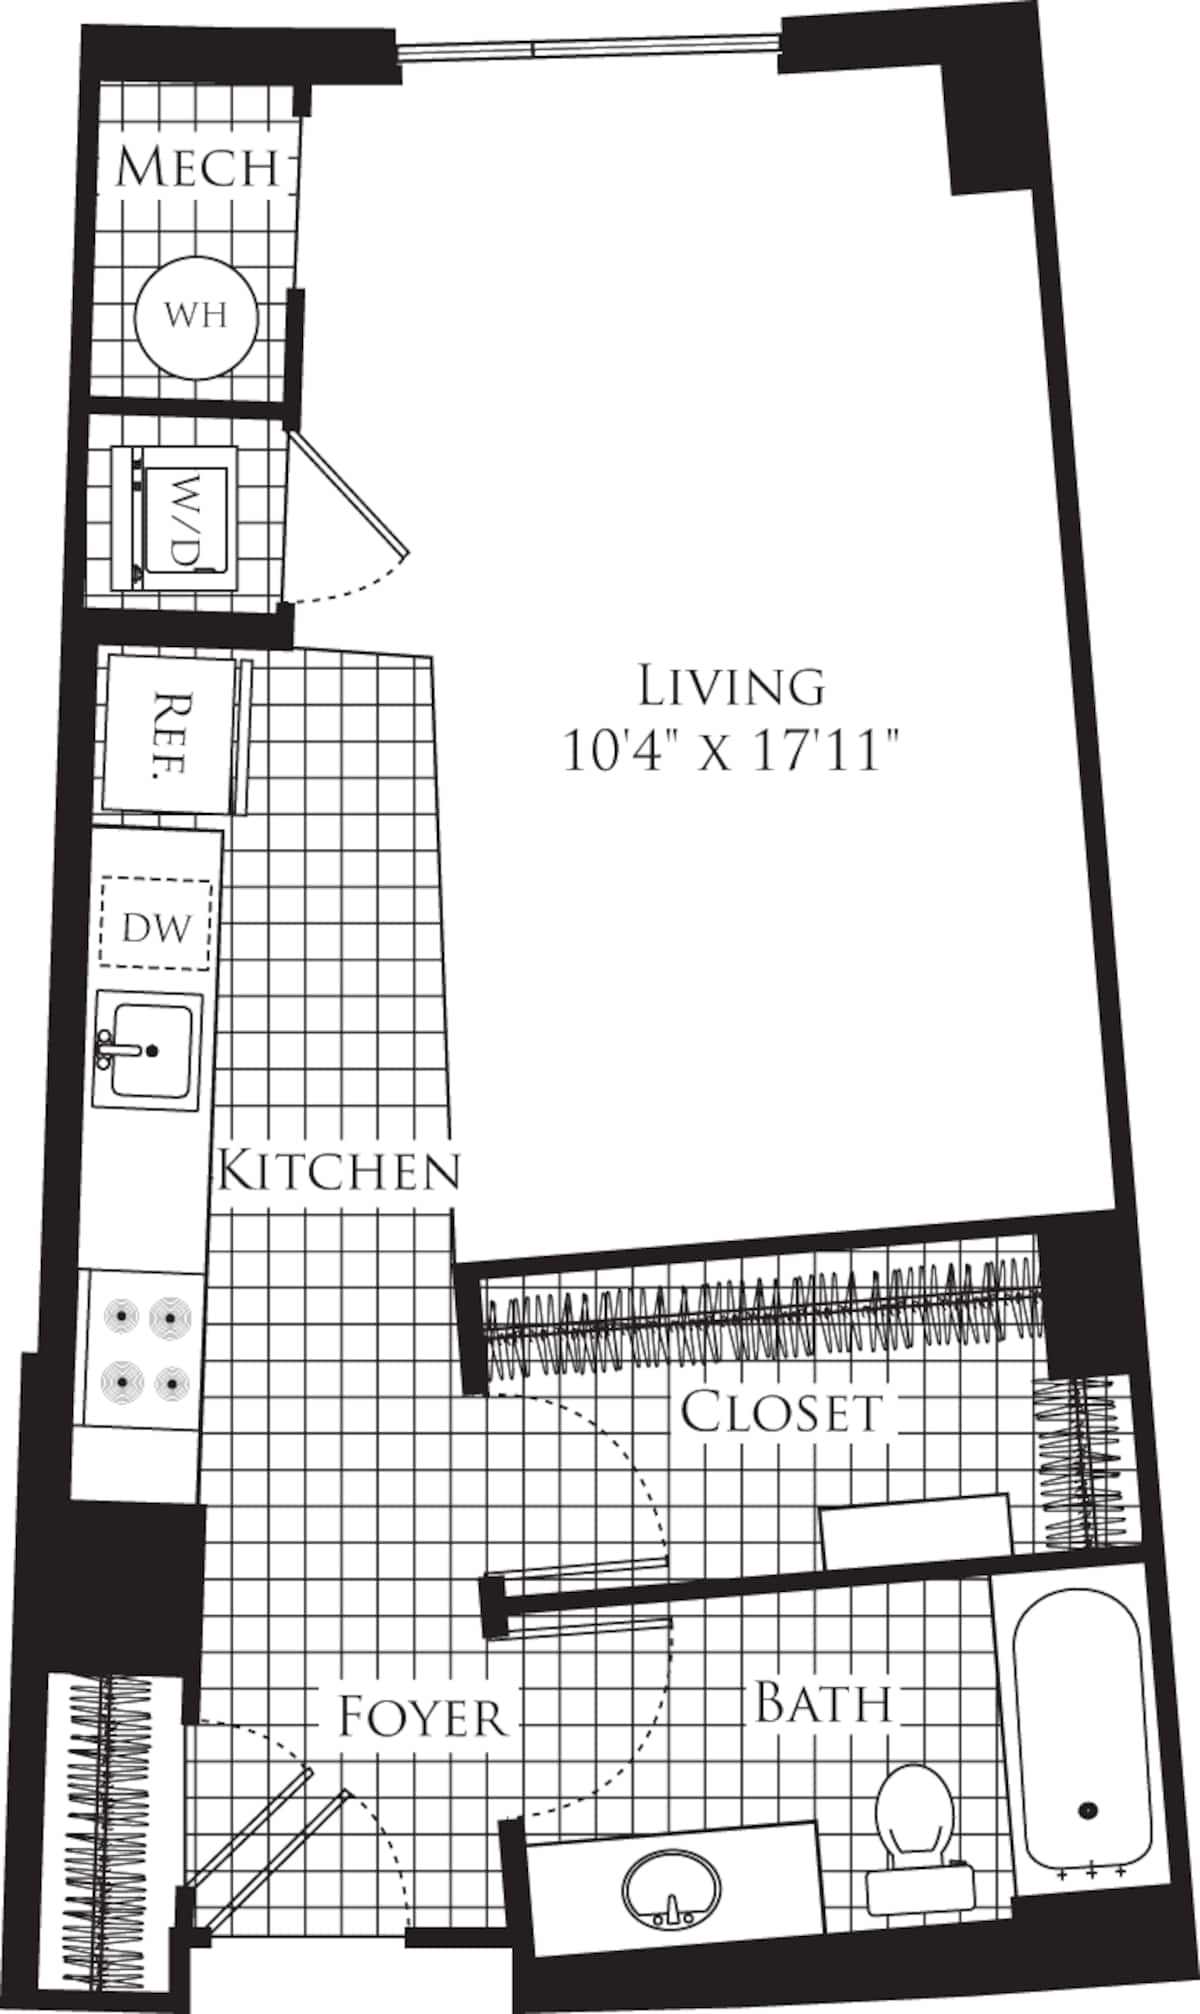 Floorplan diagram for Studio- 501, showing Studio